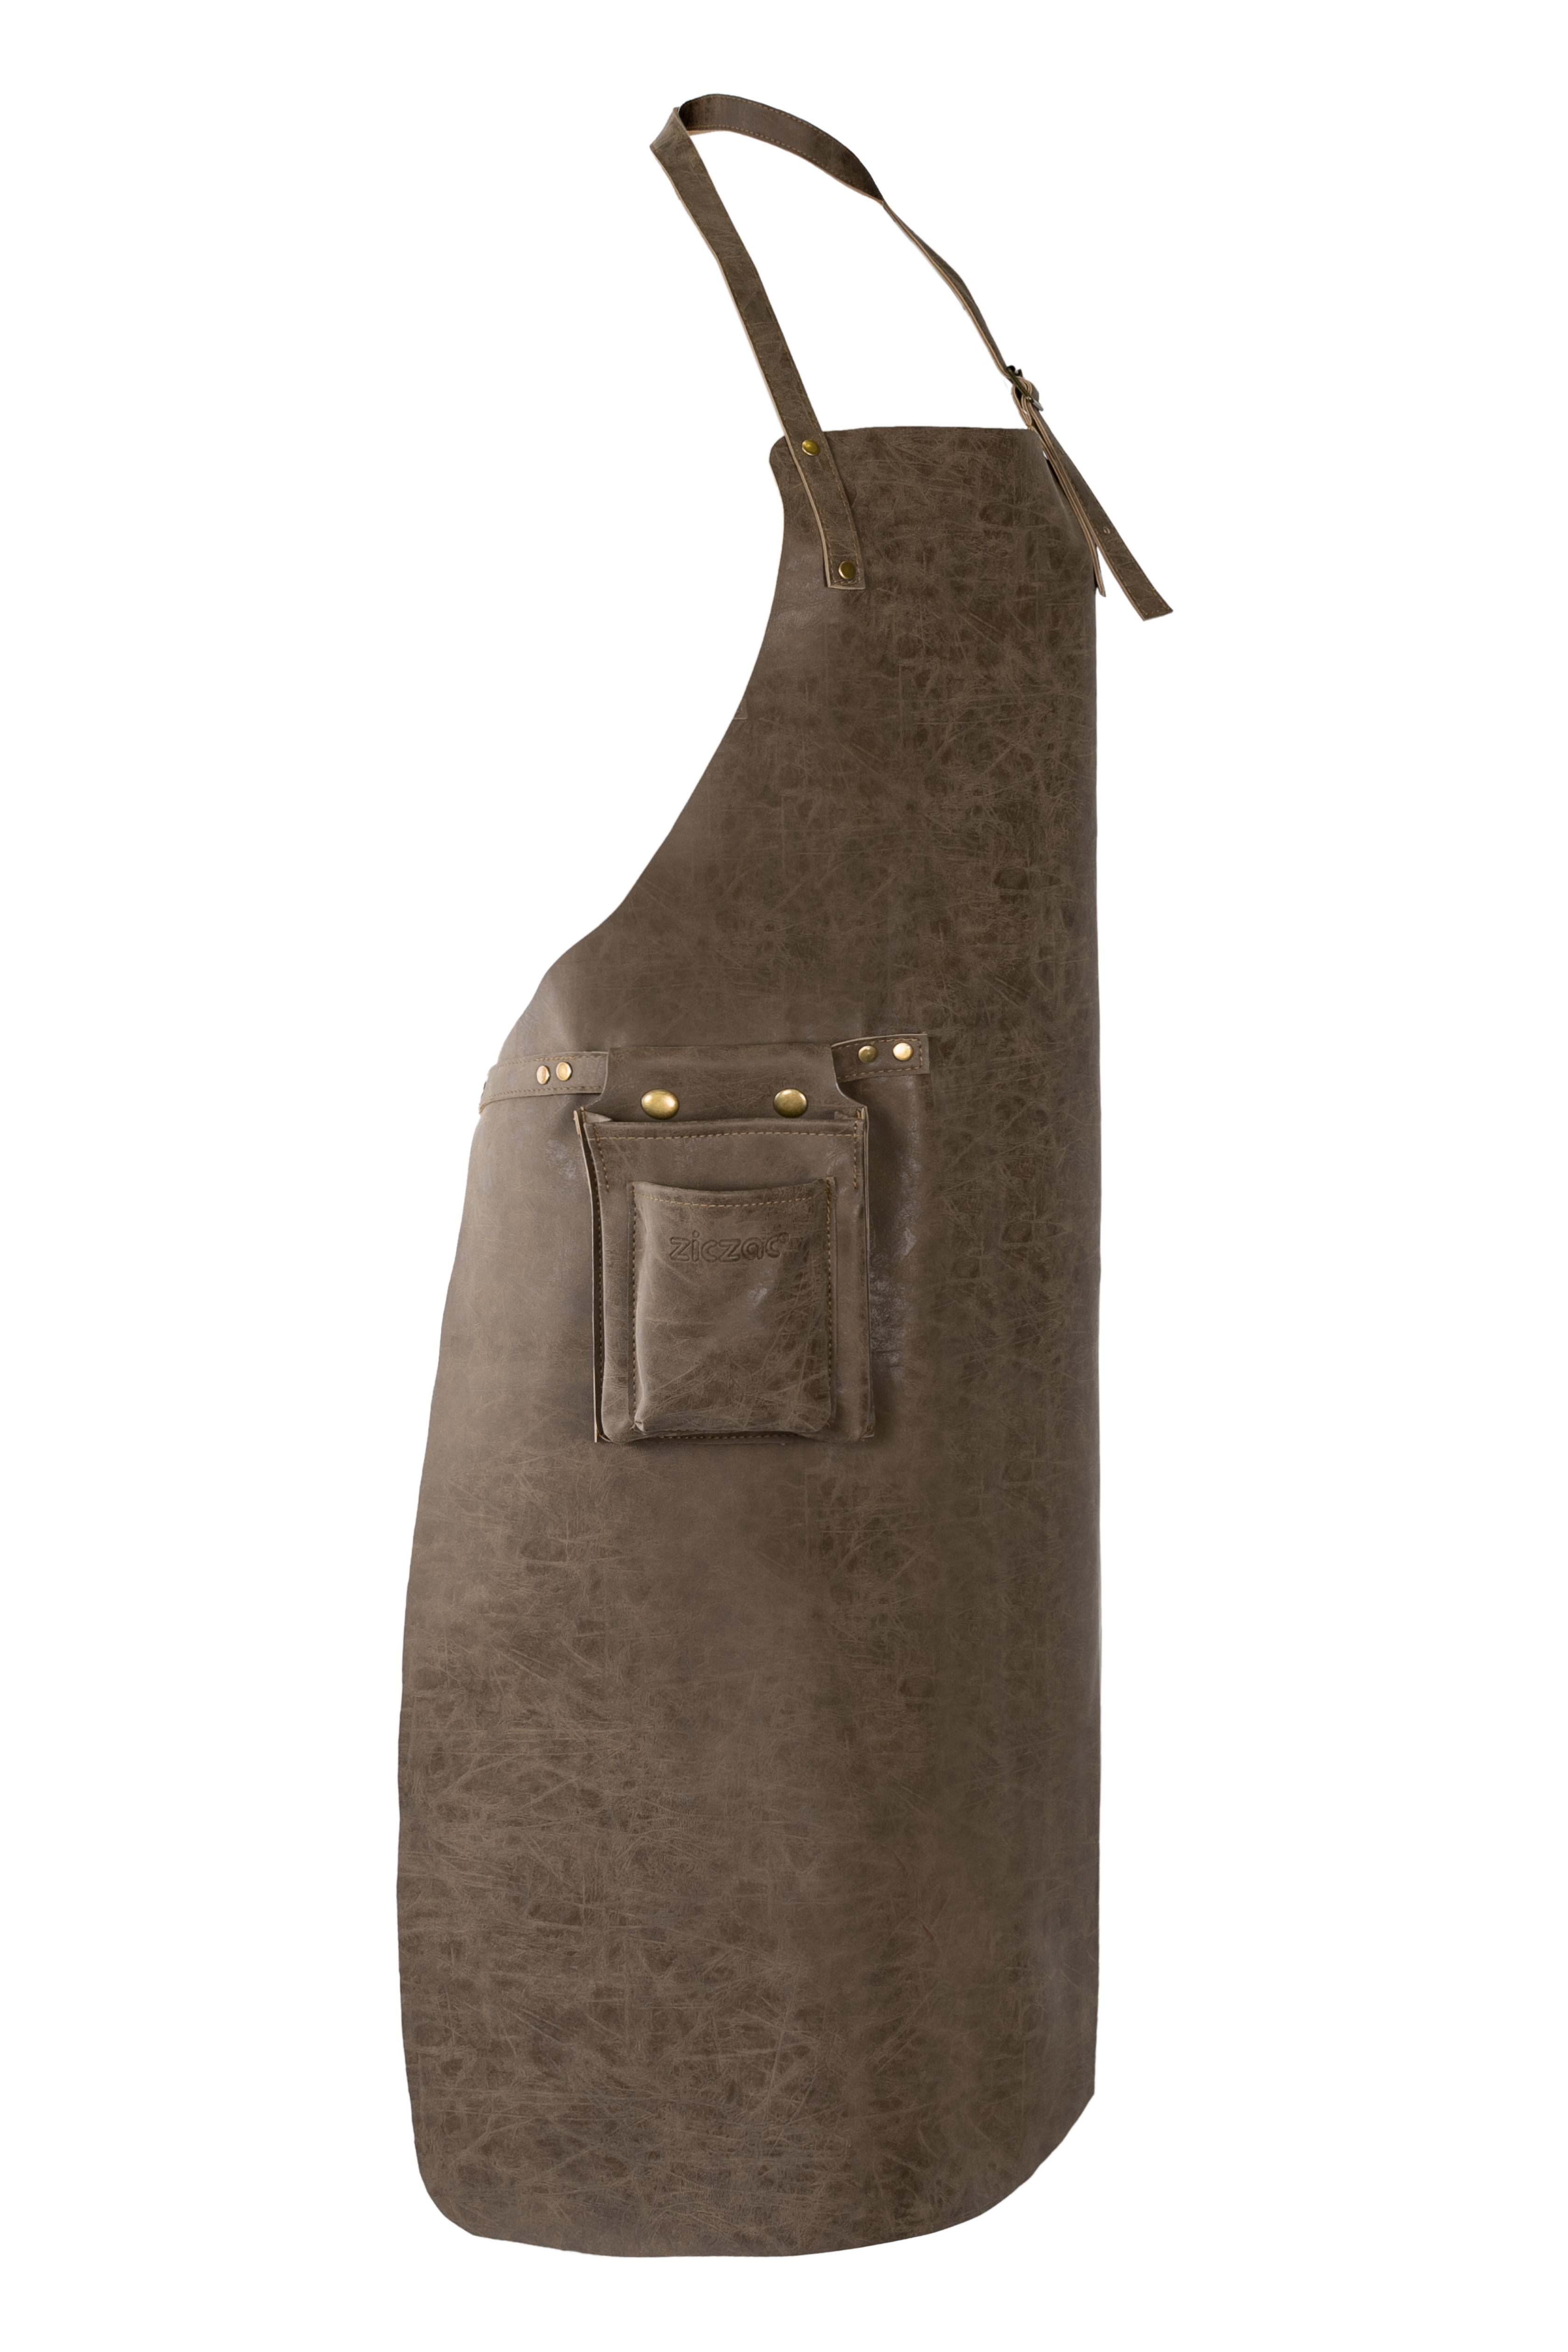 Apron TRUMAN (Towel loop - no pocket - opt. Accessory bag), 70x90 cm, coffee